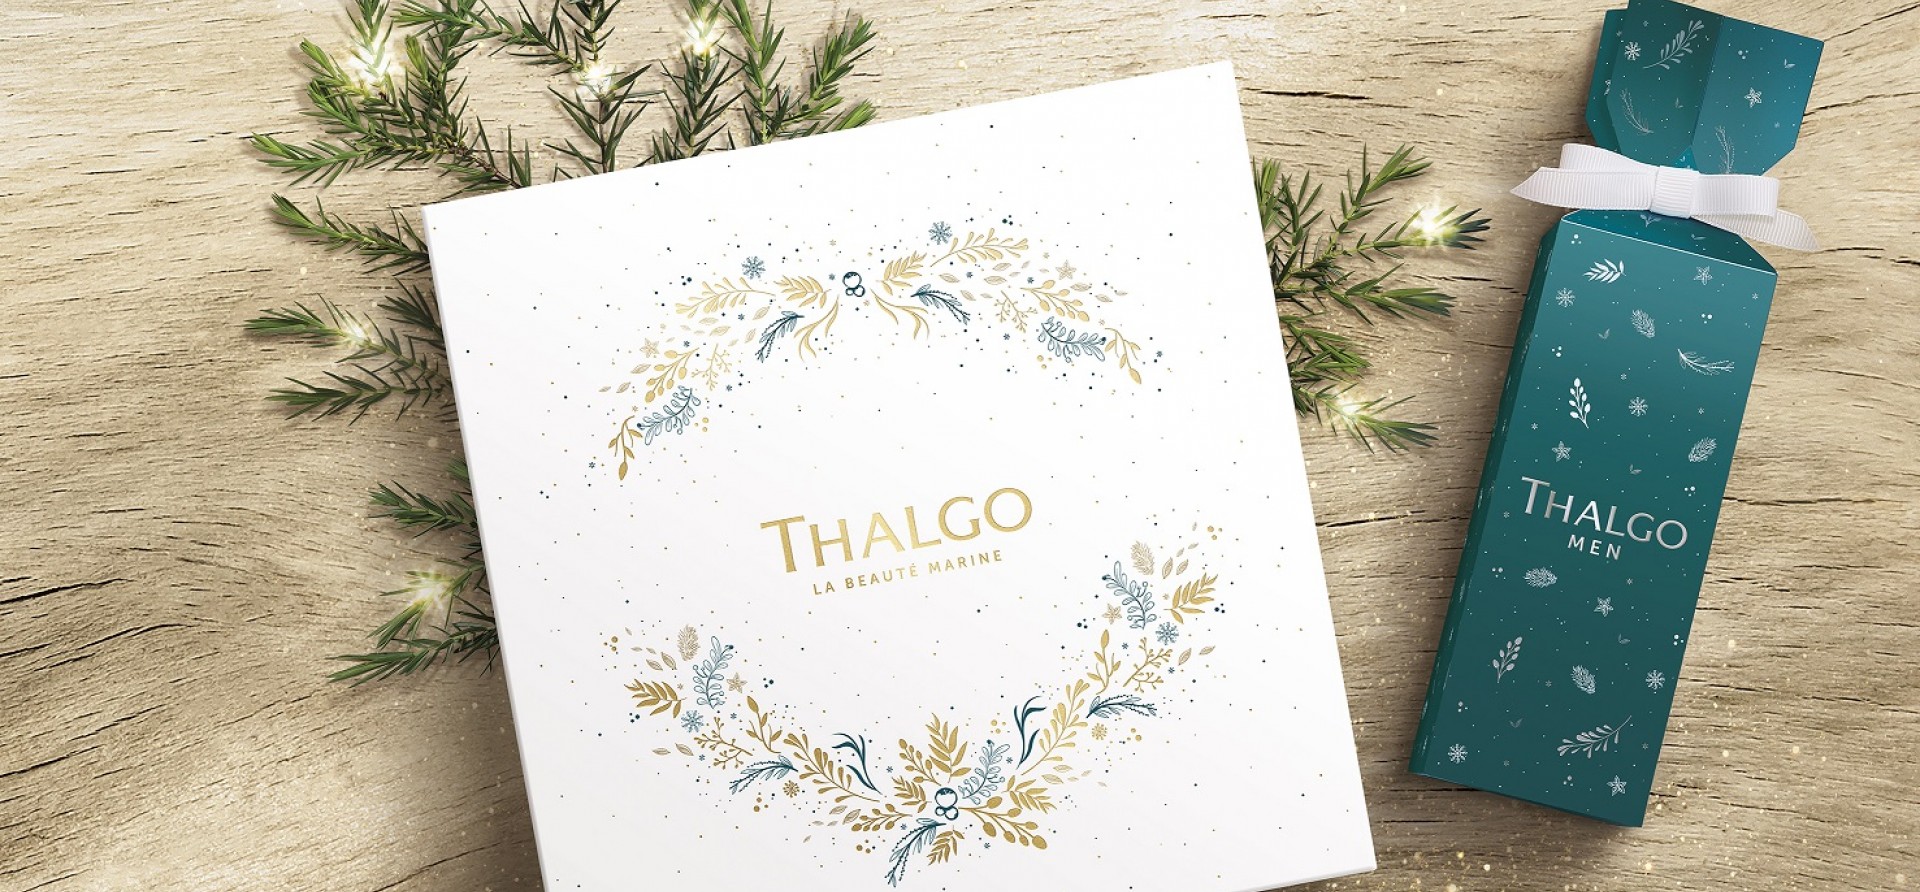 Thalgo Christmas Compilation image2 1